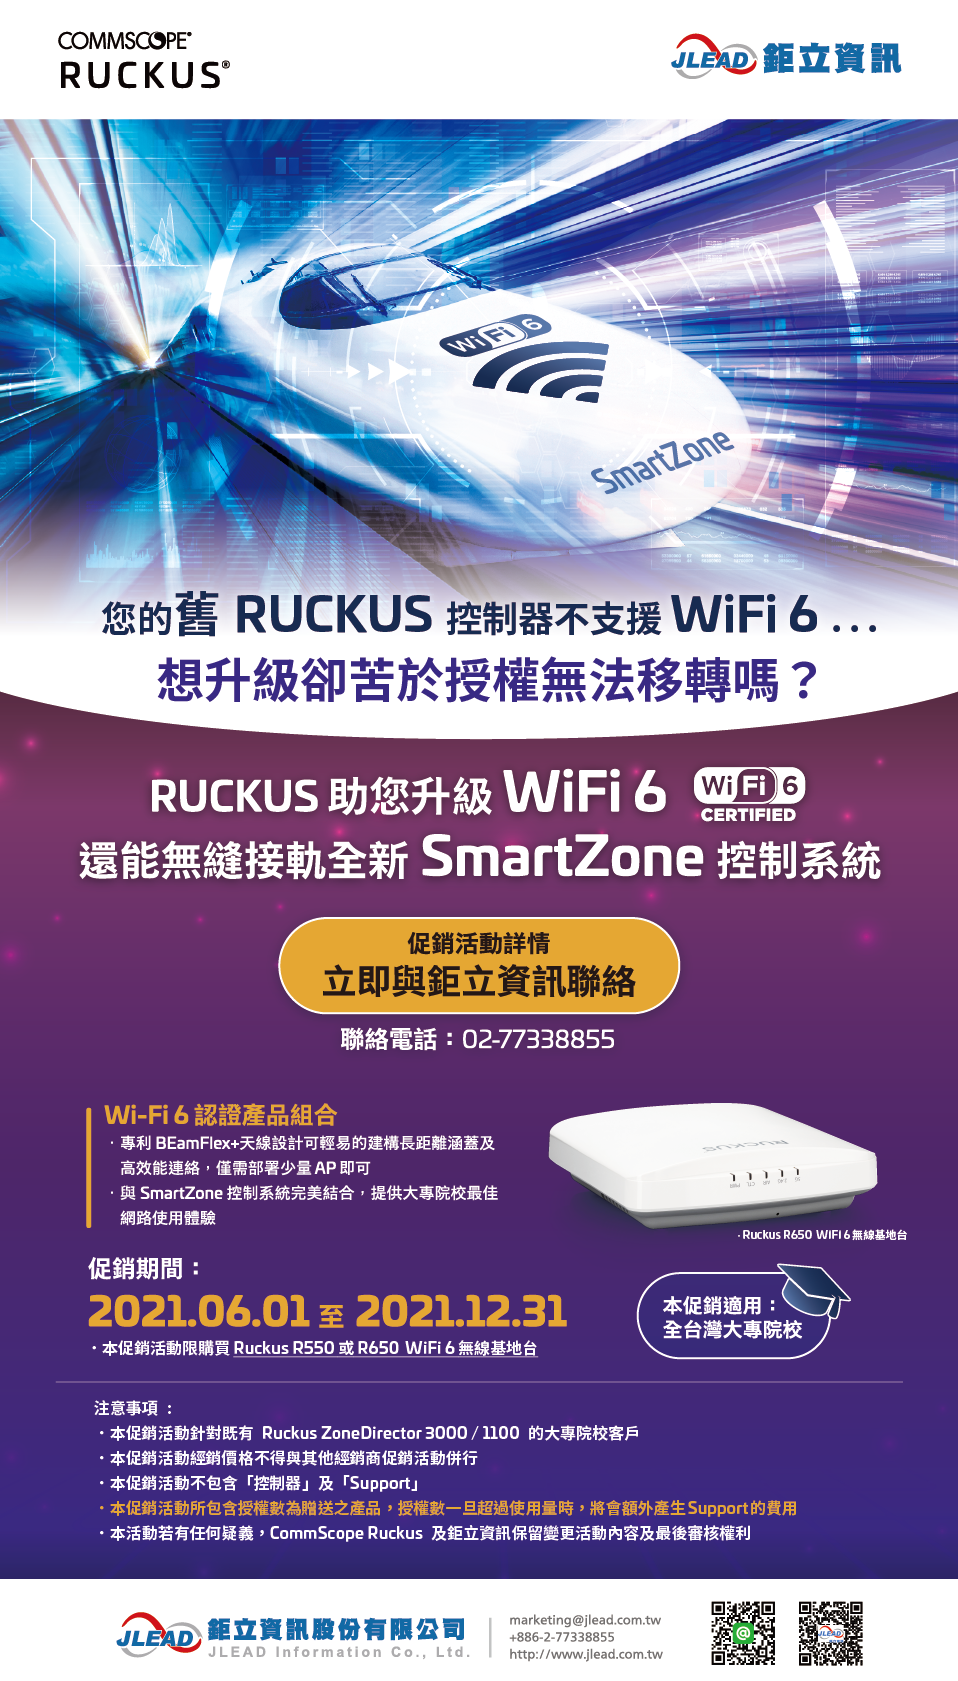 2021Q2 Q4 Ruckus Wifi6 APSmartzone Prom Univ 0602